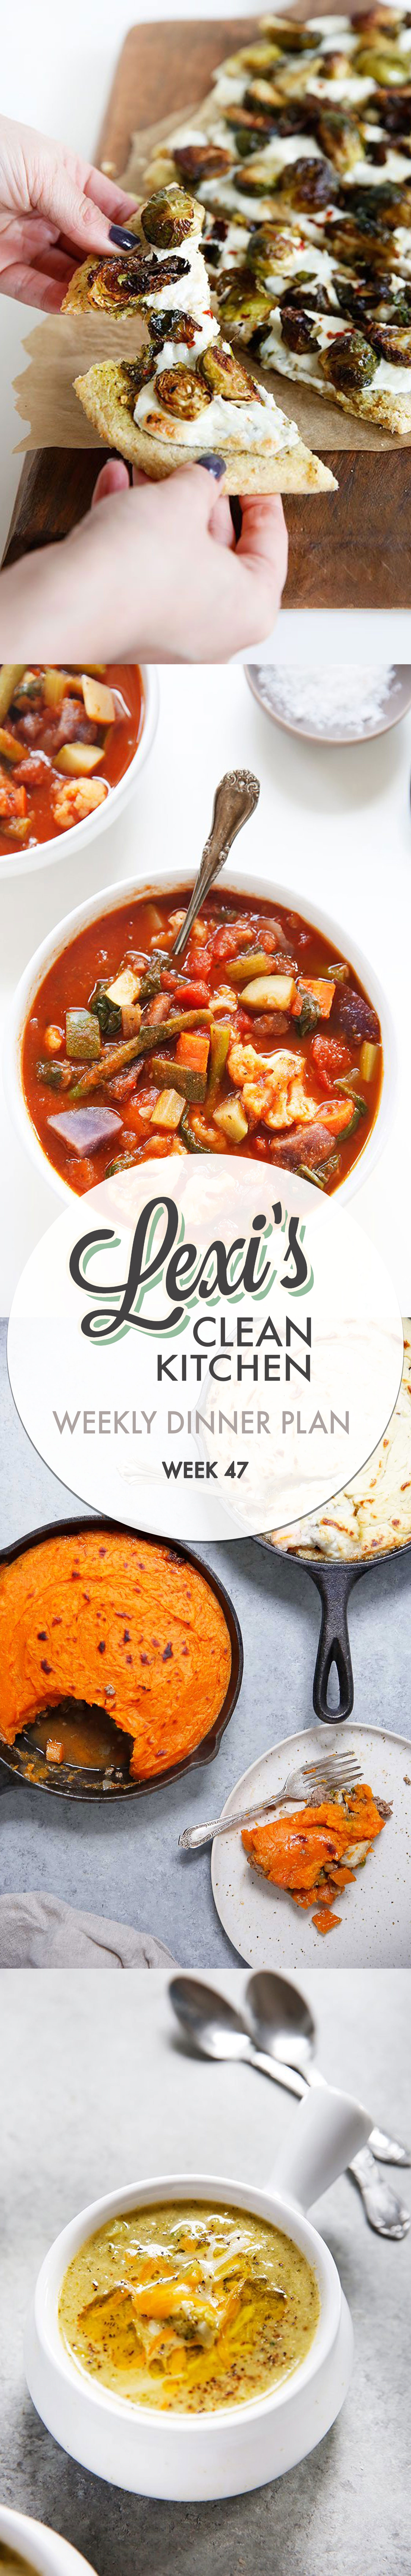 lexi’s weekly dinner plan week 47